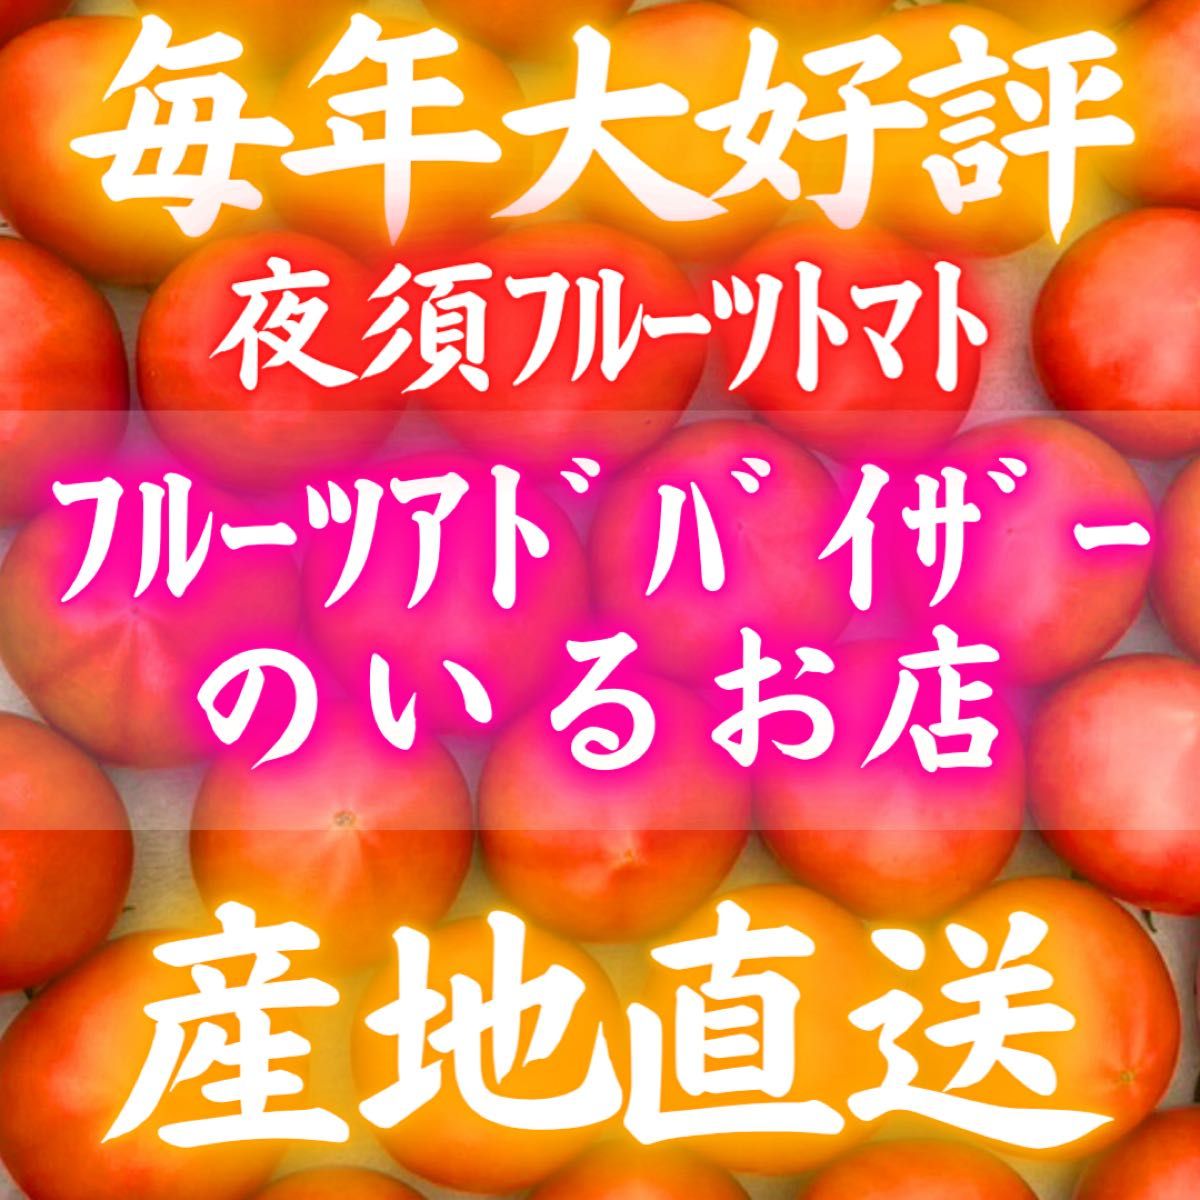 28知県産 土佐 フルーツトマト 産地直送 約1kg 宅急便コンパクト